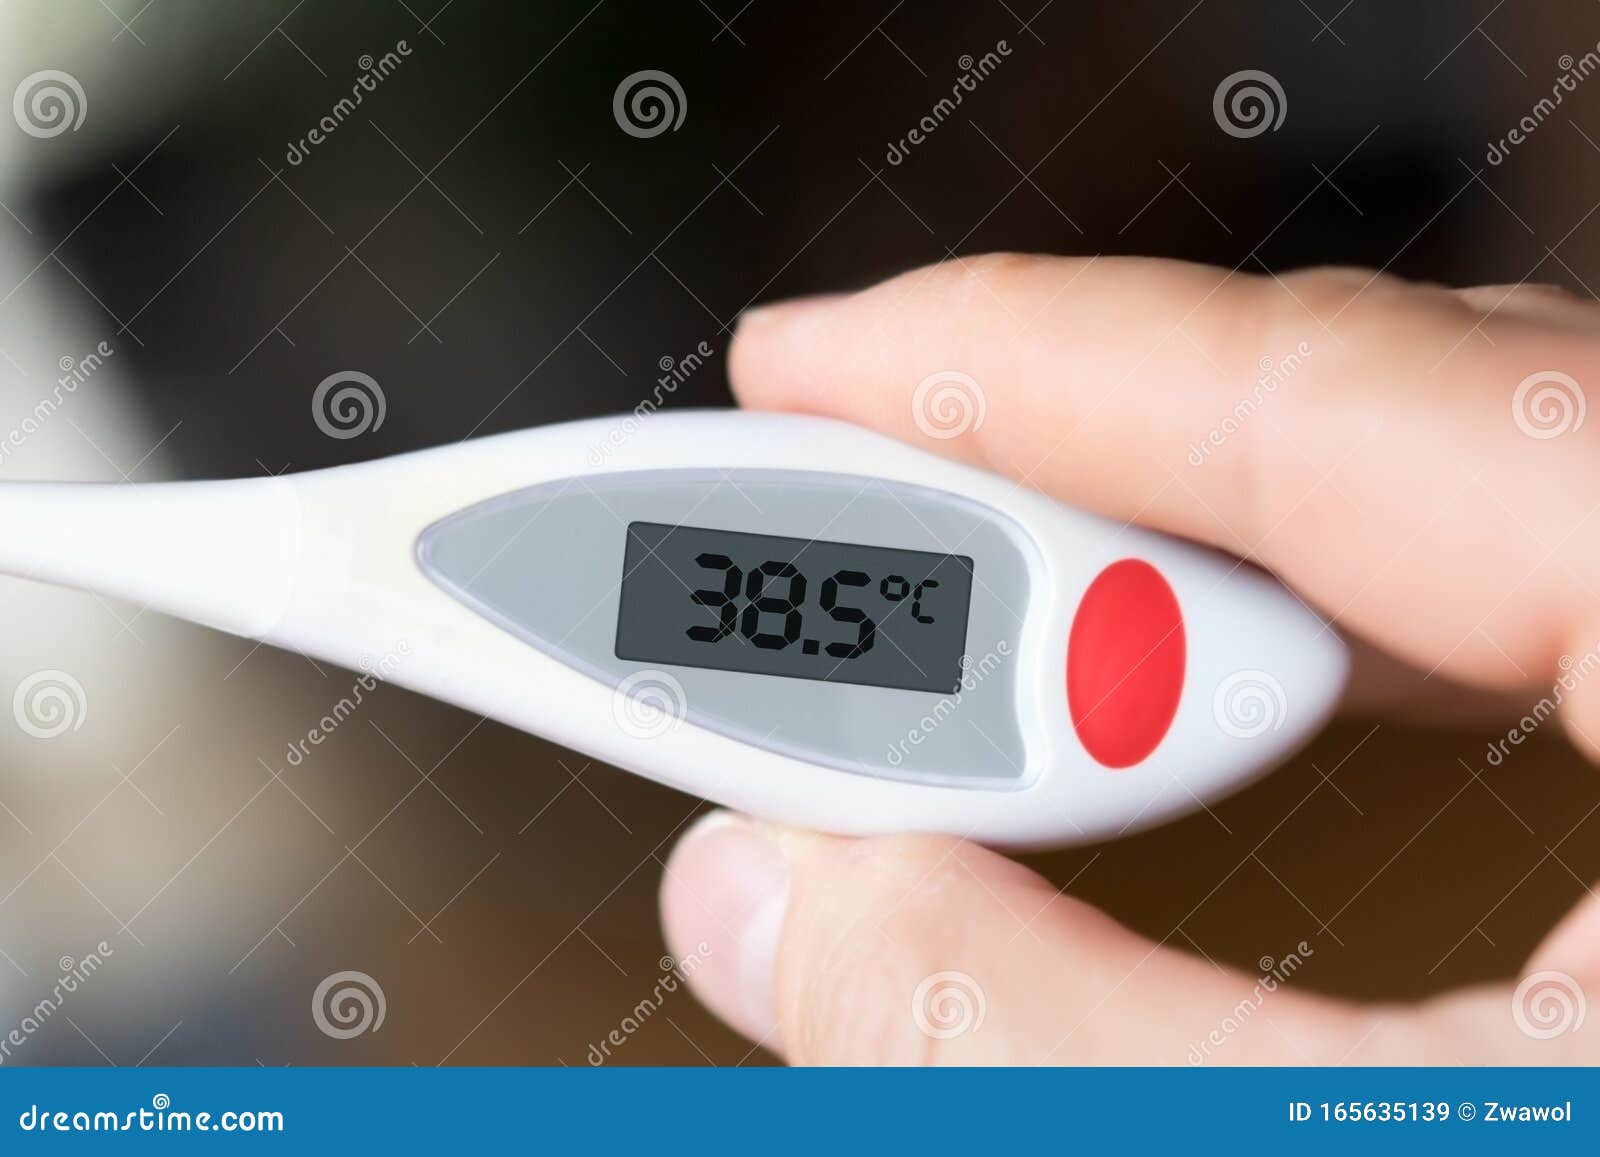 多温度测量方式，秒秒测医用电子体温计给你不一样的测温体验 - 太火鸟-B2B工业设计与产品创新SaaS平台